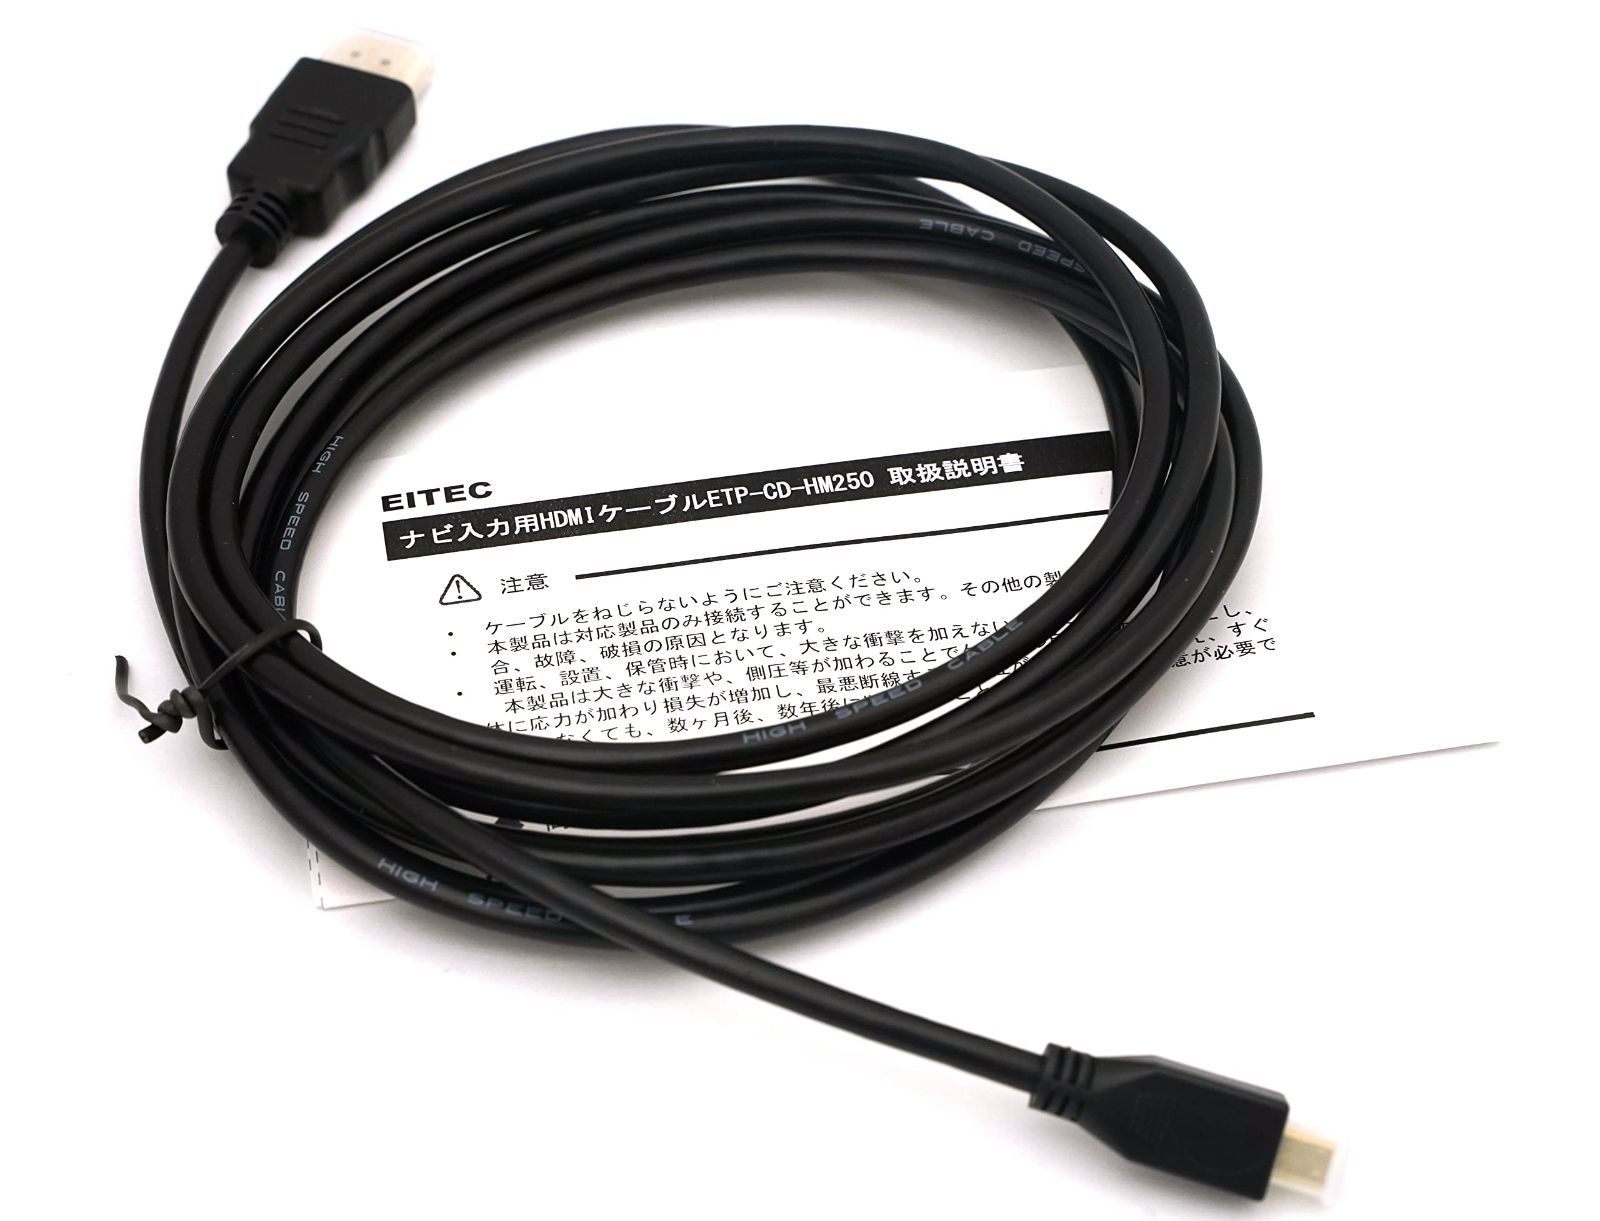 カロッツェリア パイオニア CD-HM221 HDMI 変換 ケーブル 2m TypeA オス TypeD オス 車 ナビ オプション パーツ 配線 コード 接続